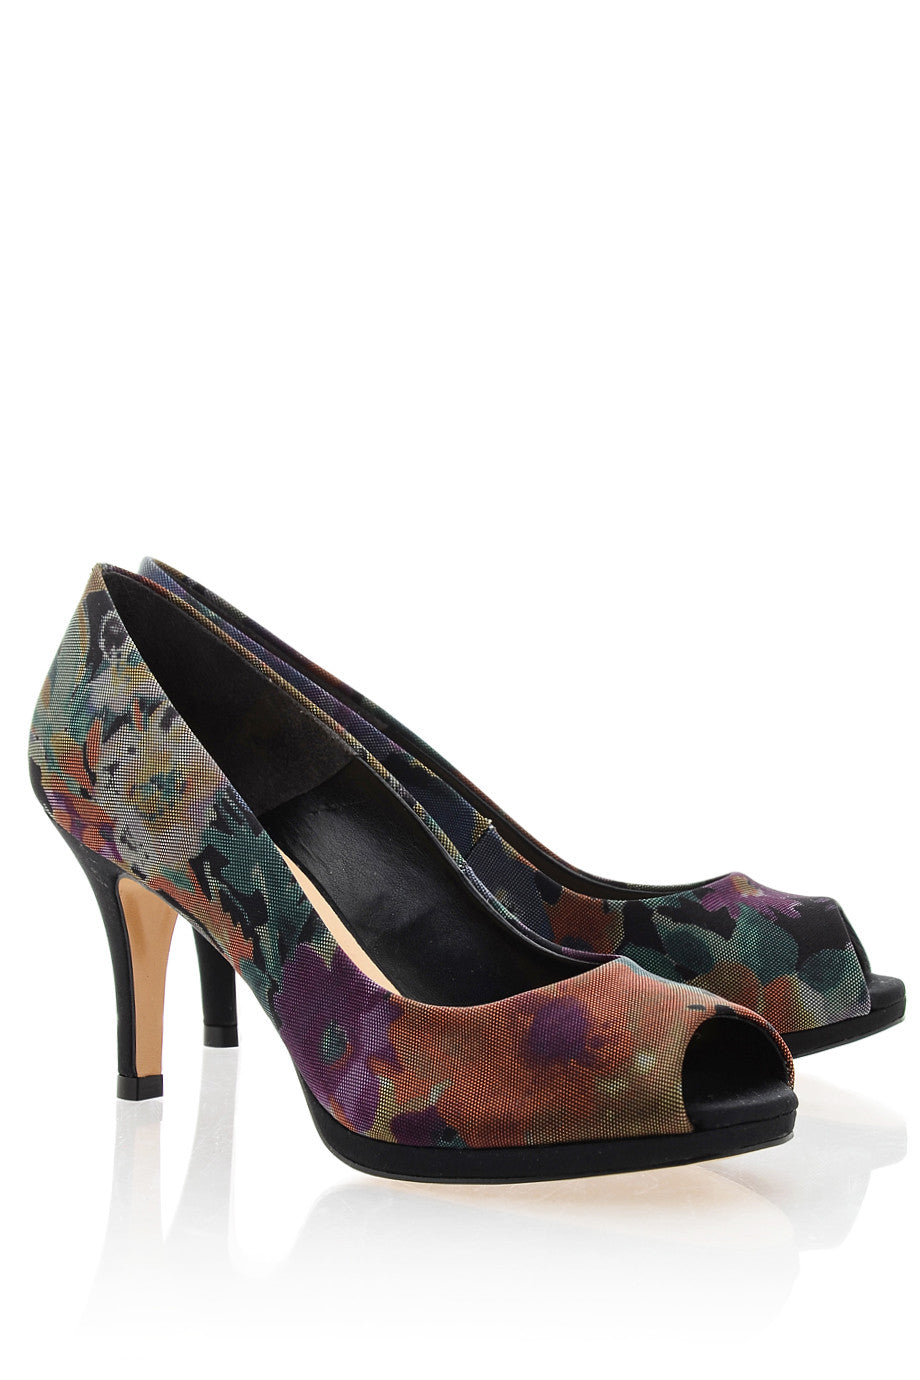 Amazon.com | FSJ Women Gorgeous Super High Heels Dress Shoes Multicolored Peep  Toe Platform Pumps Size 4 Floral | Pumps